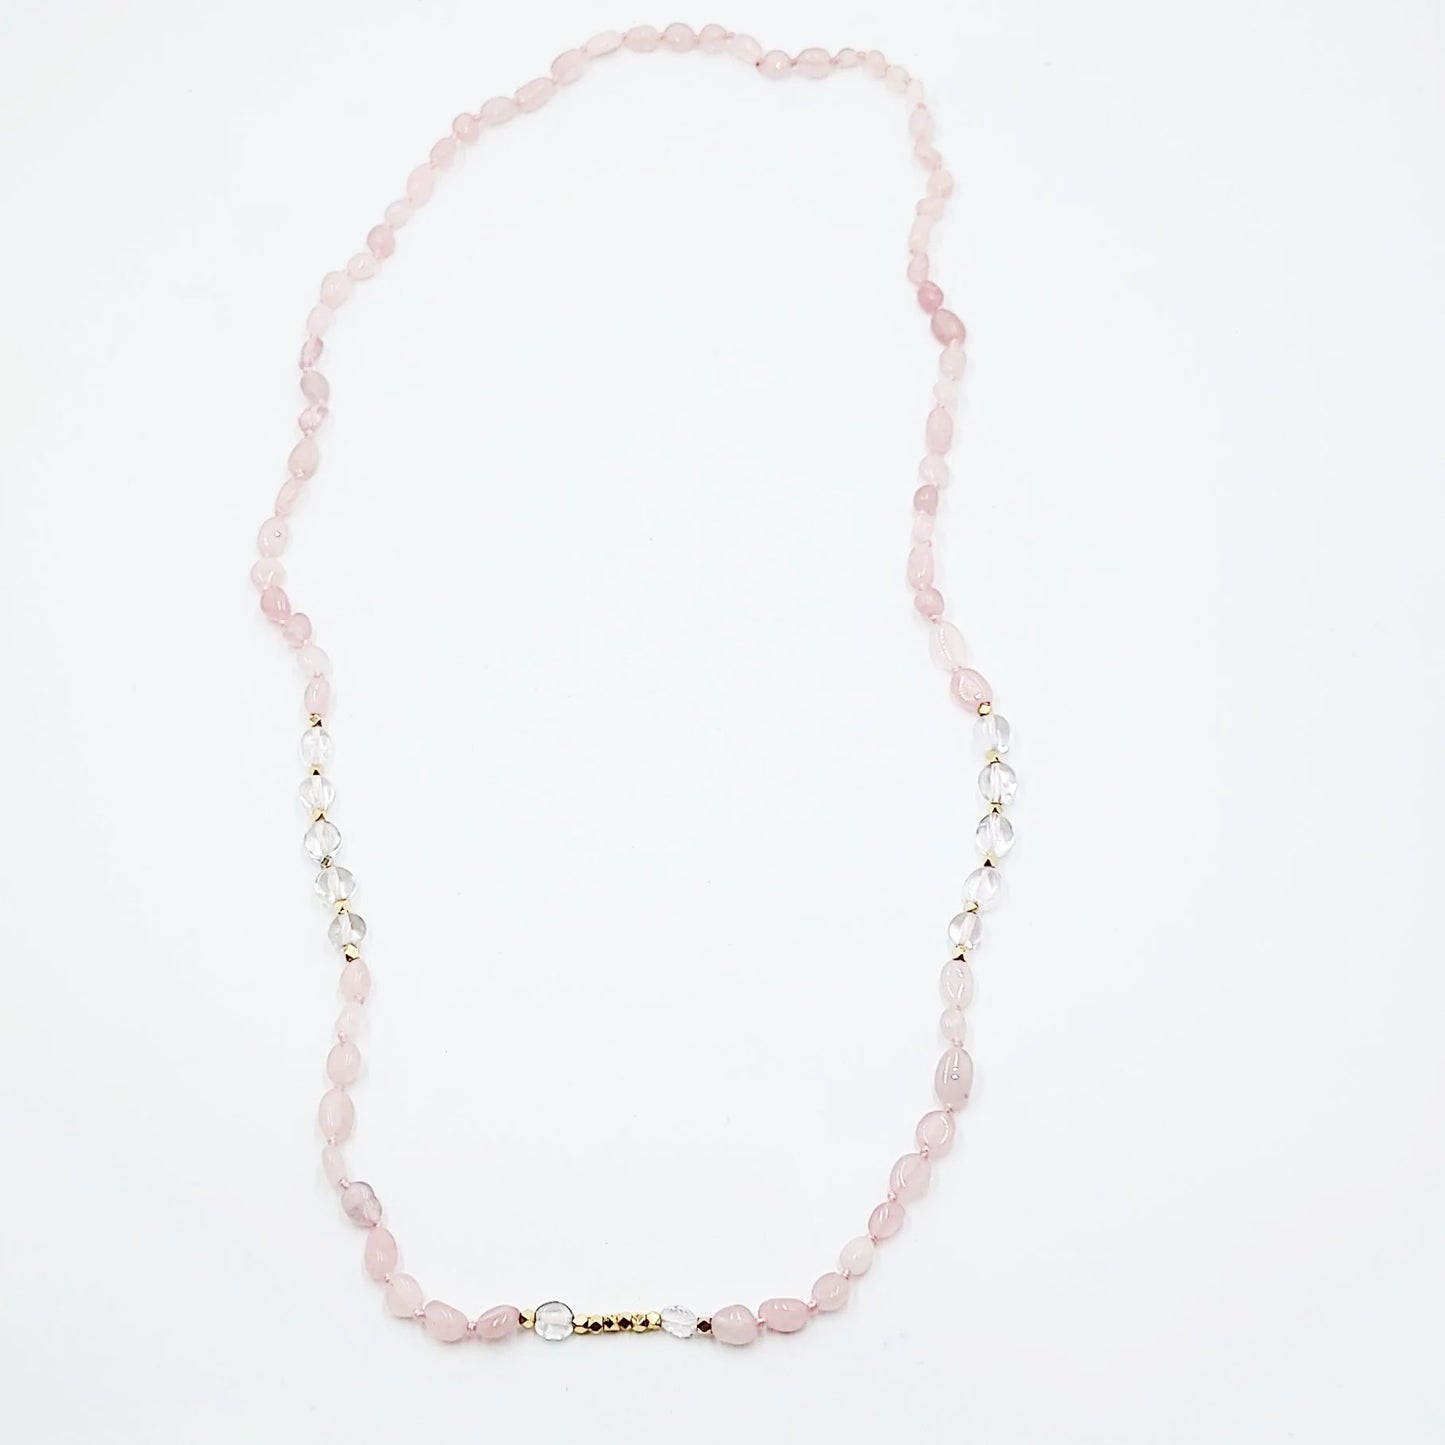 Rose Quartz & Clear Quartz Bead Necklace Tumbled Stones 30" - Elevated Metaphysical